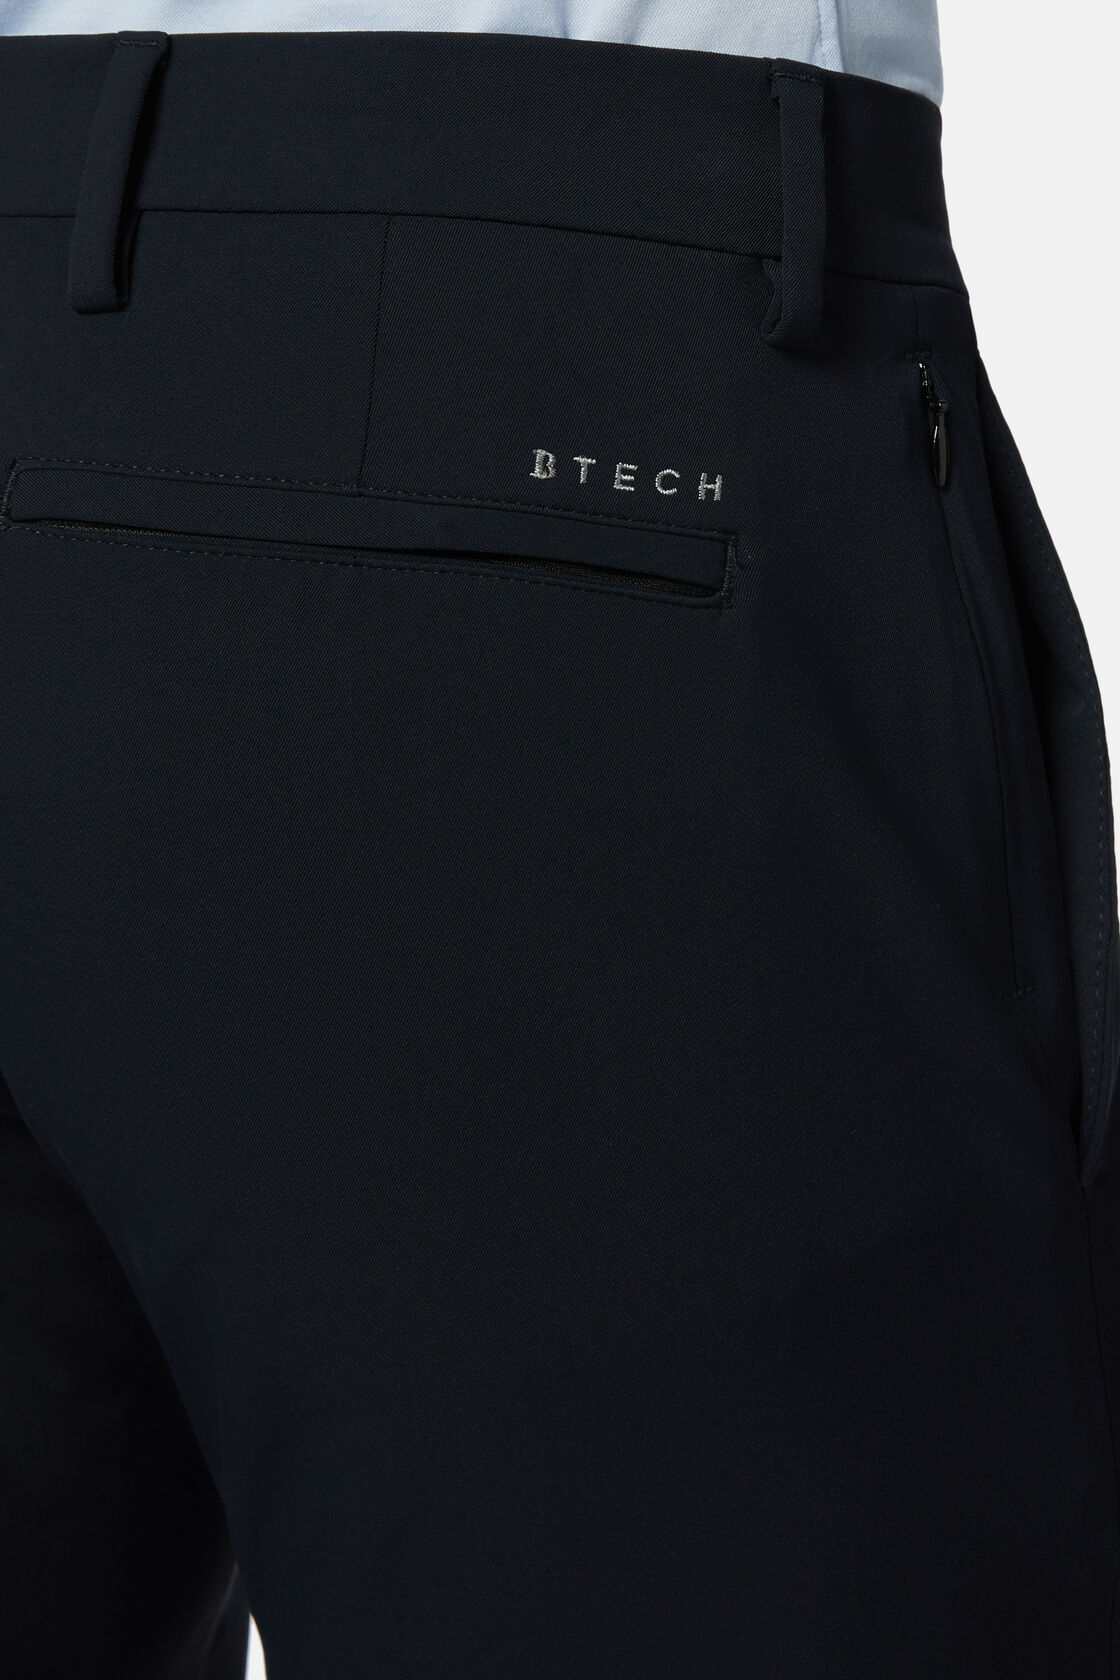 Pantalon En Nylon Stretch Performance B Tech, bleu marine, hi-res